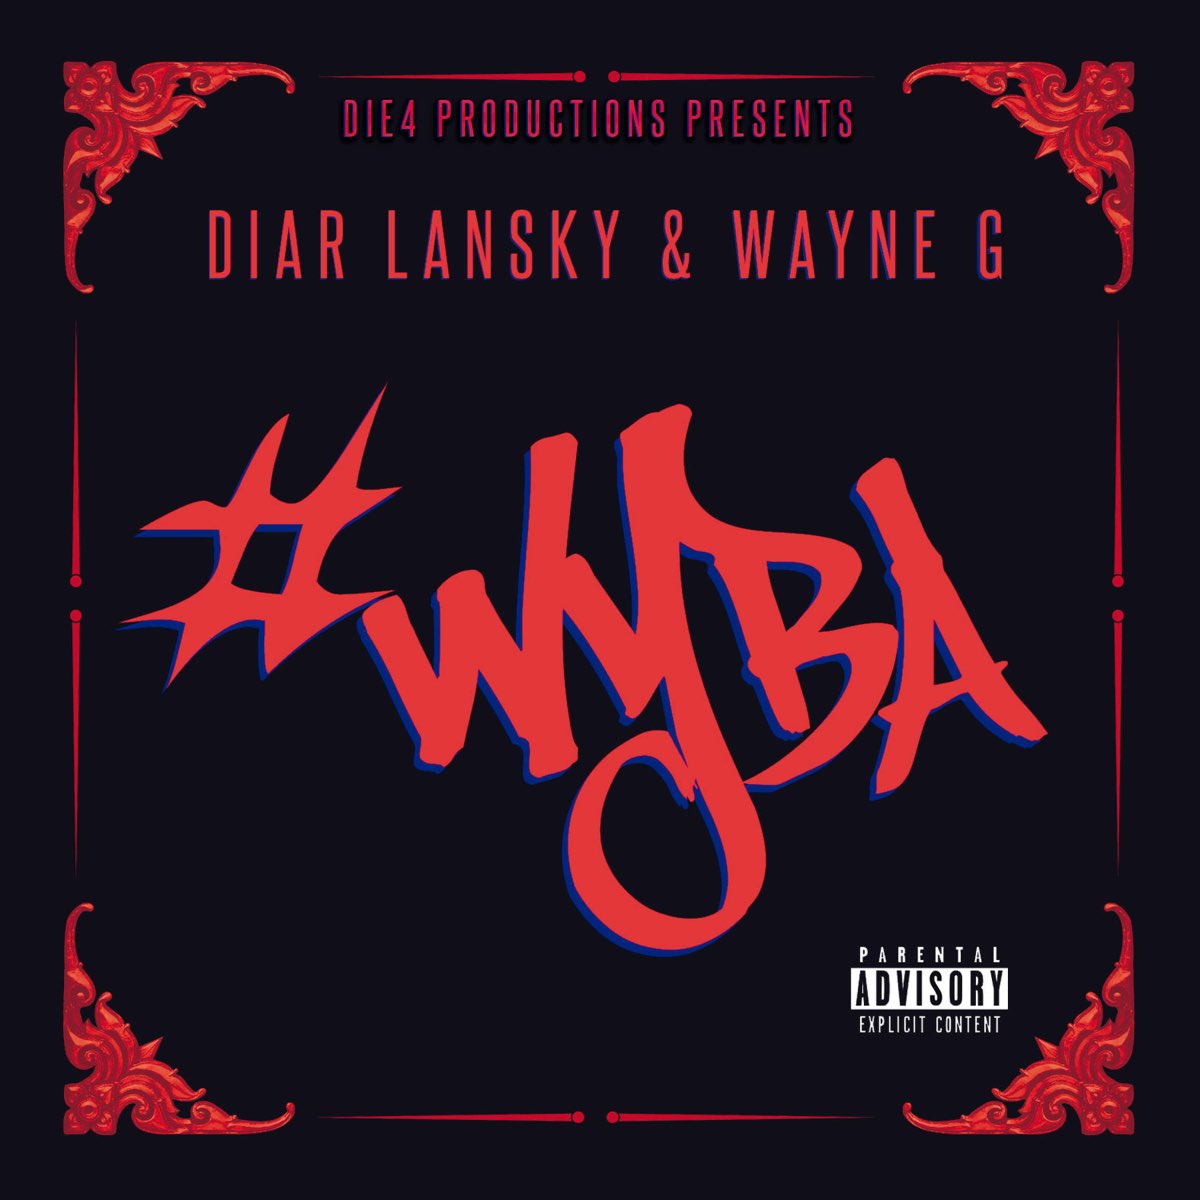 Diar Lansky & Wayne G - #Wyba